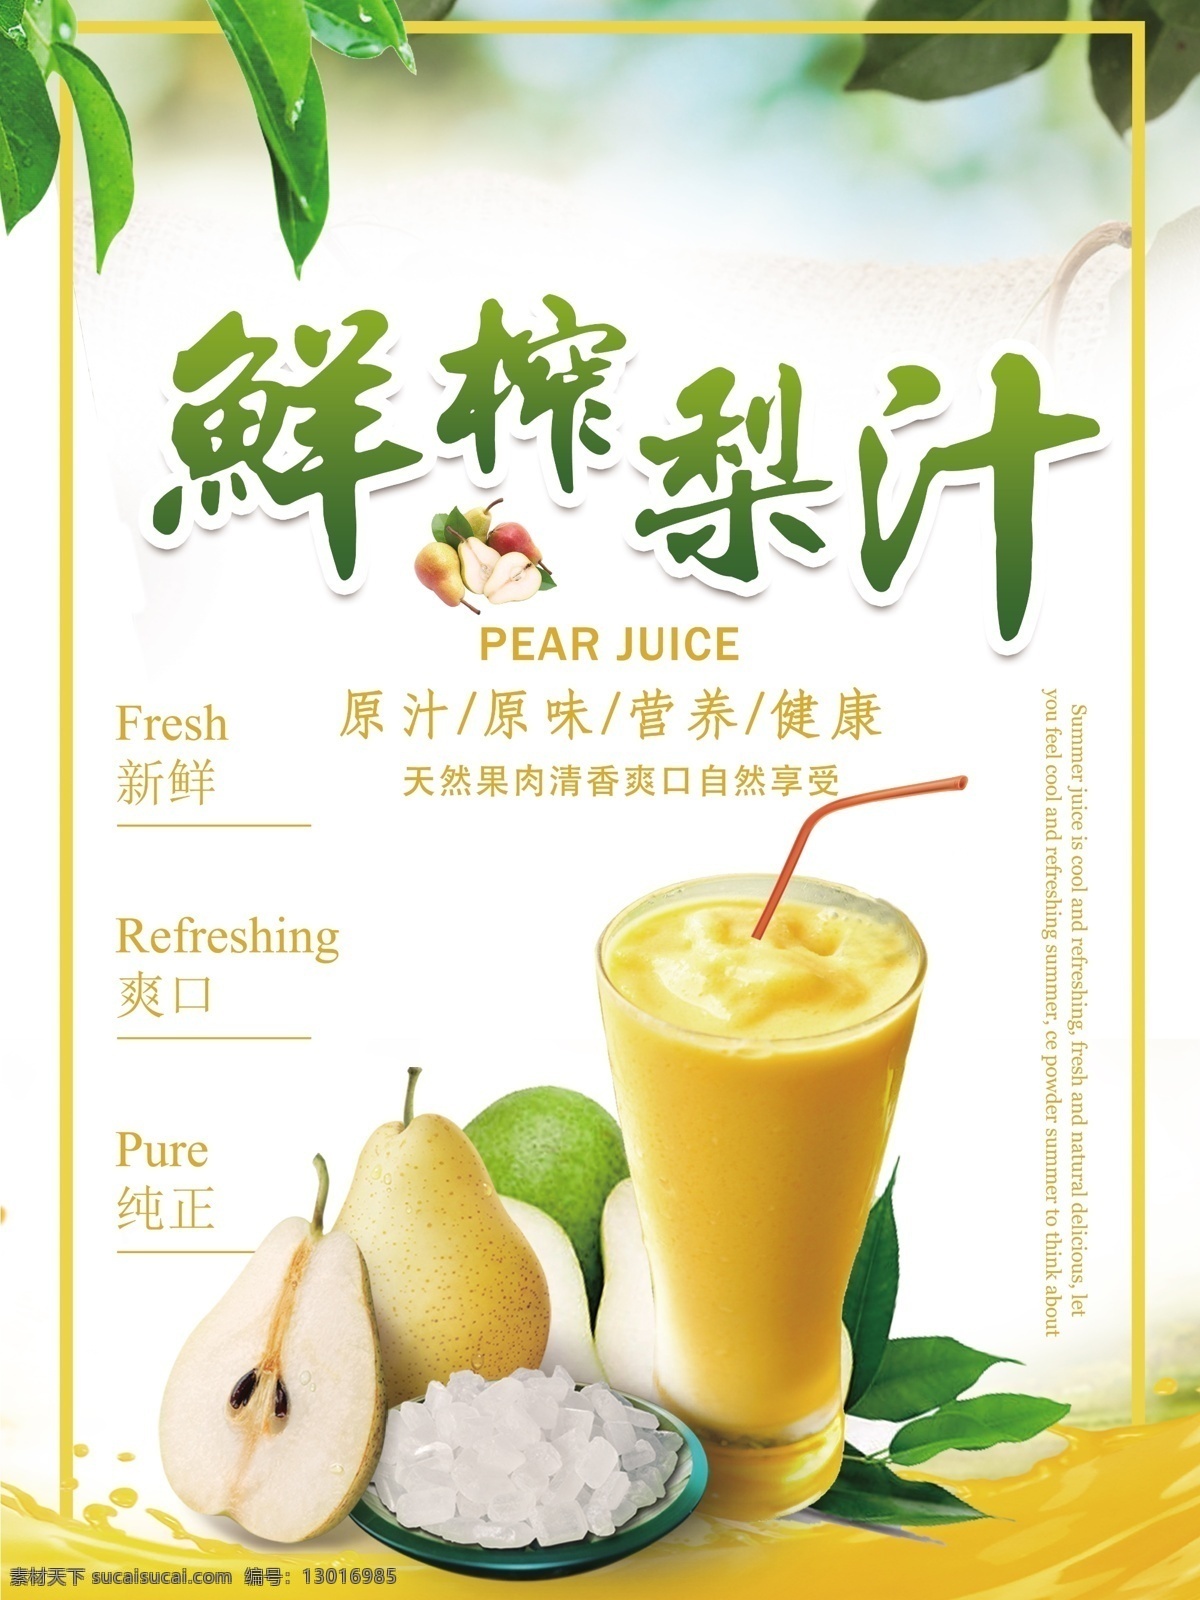 夏日 清凉 梨汁 饮品 促销 海报 饮料 果汁 凤梨 夏天